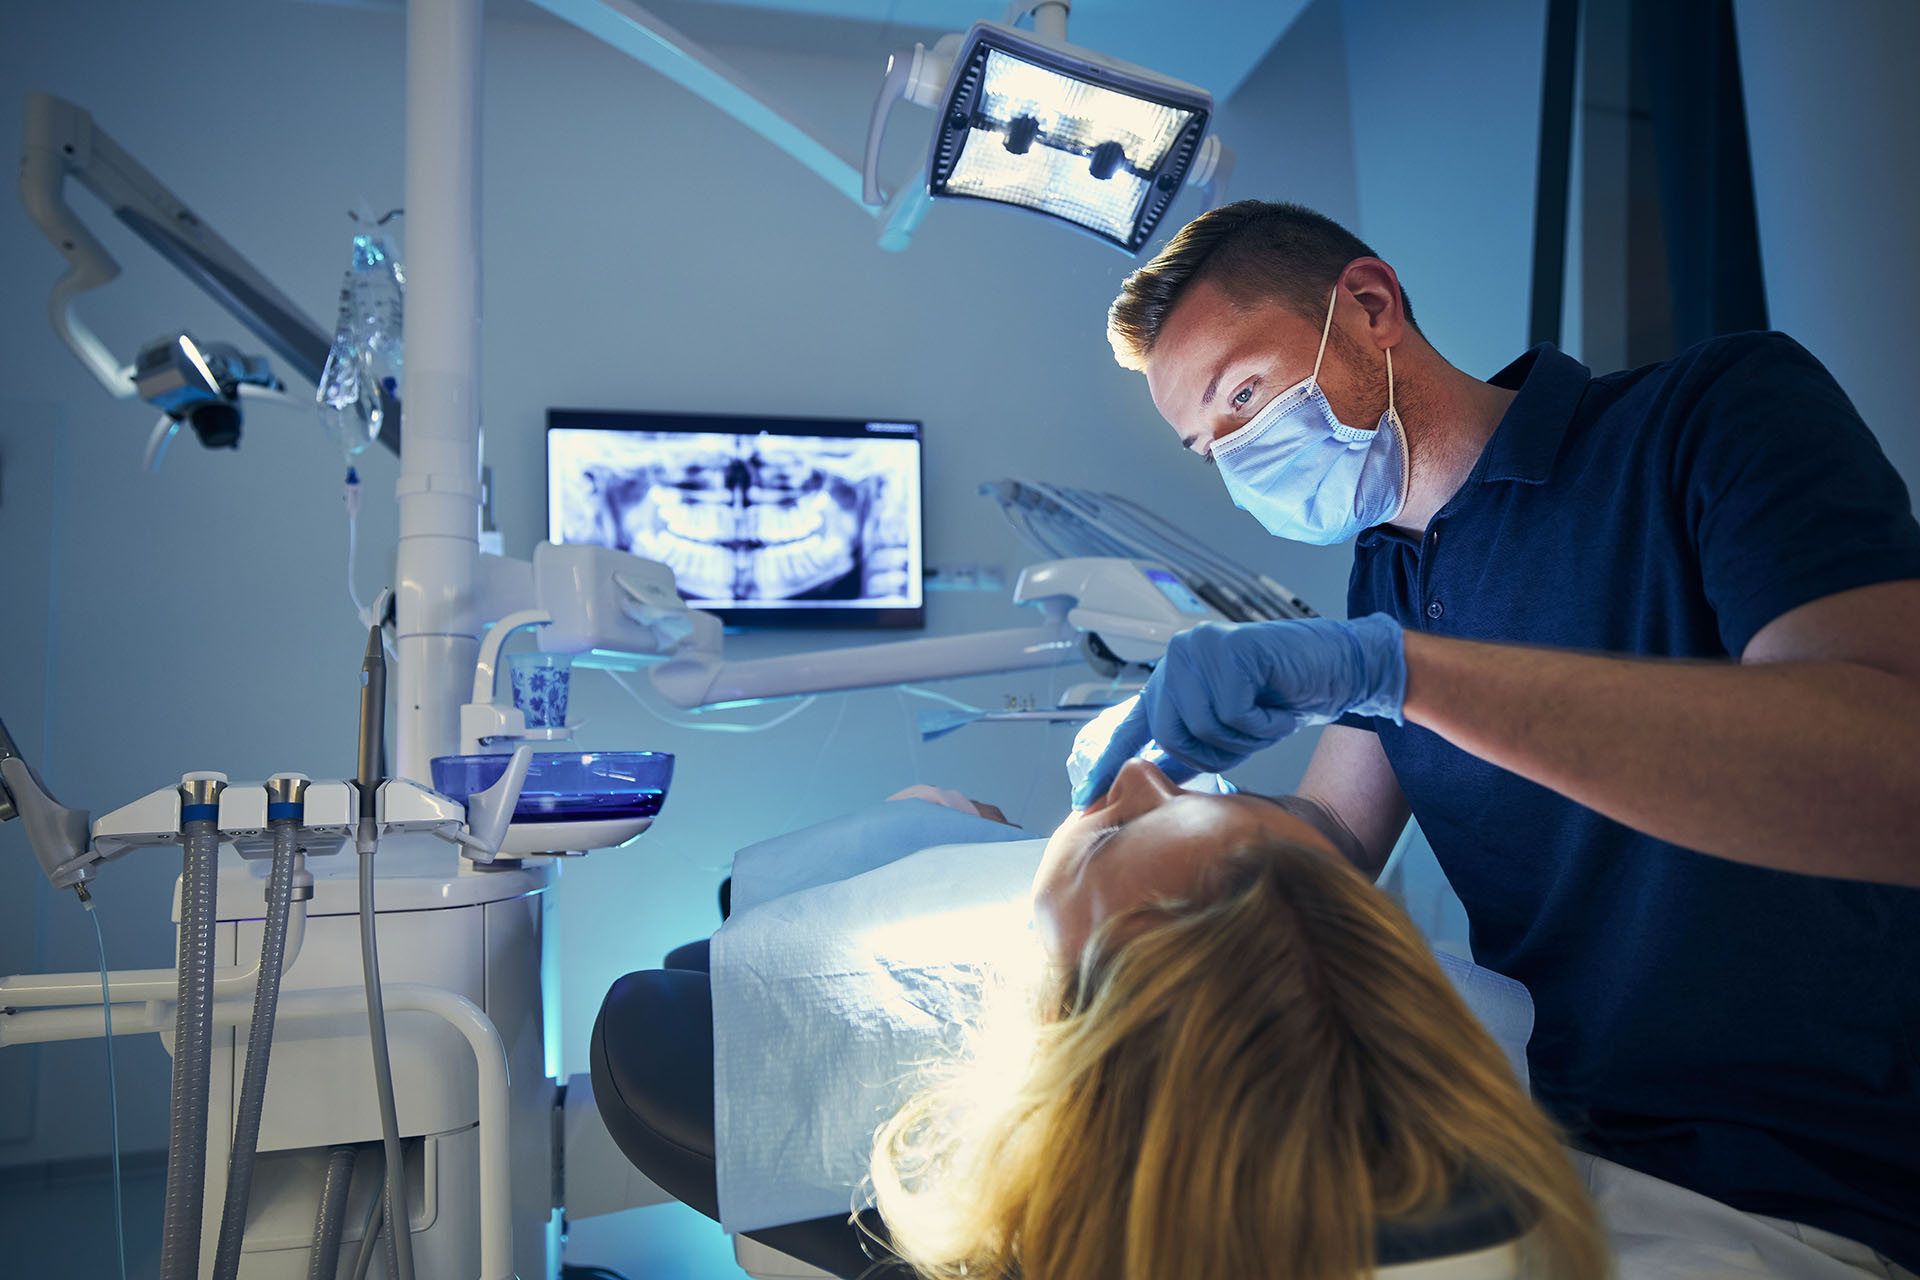 Clínica Dental Andrea Compte, tu Centro Odontológico especializado. Enfermedad periodontal en Santa Magdalena. Dentista examinando al paciente en cirugía dental.